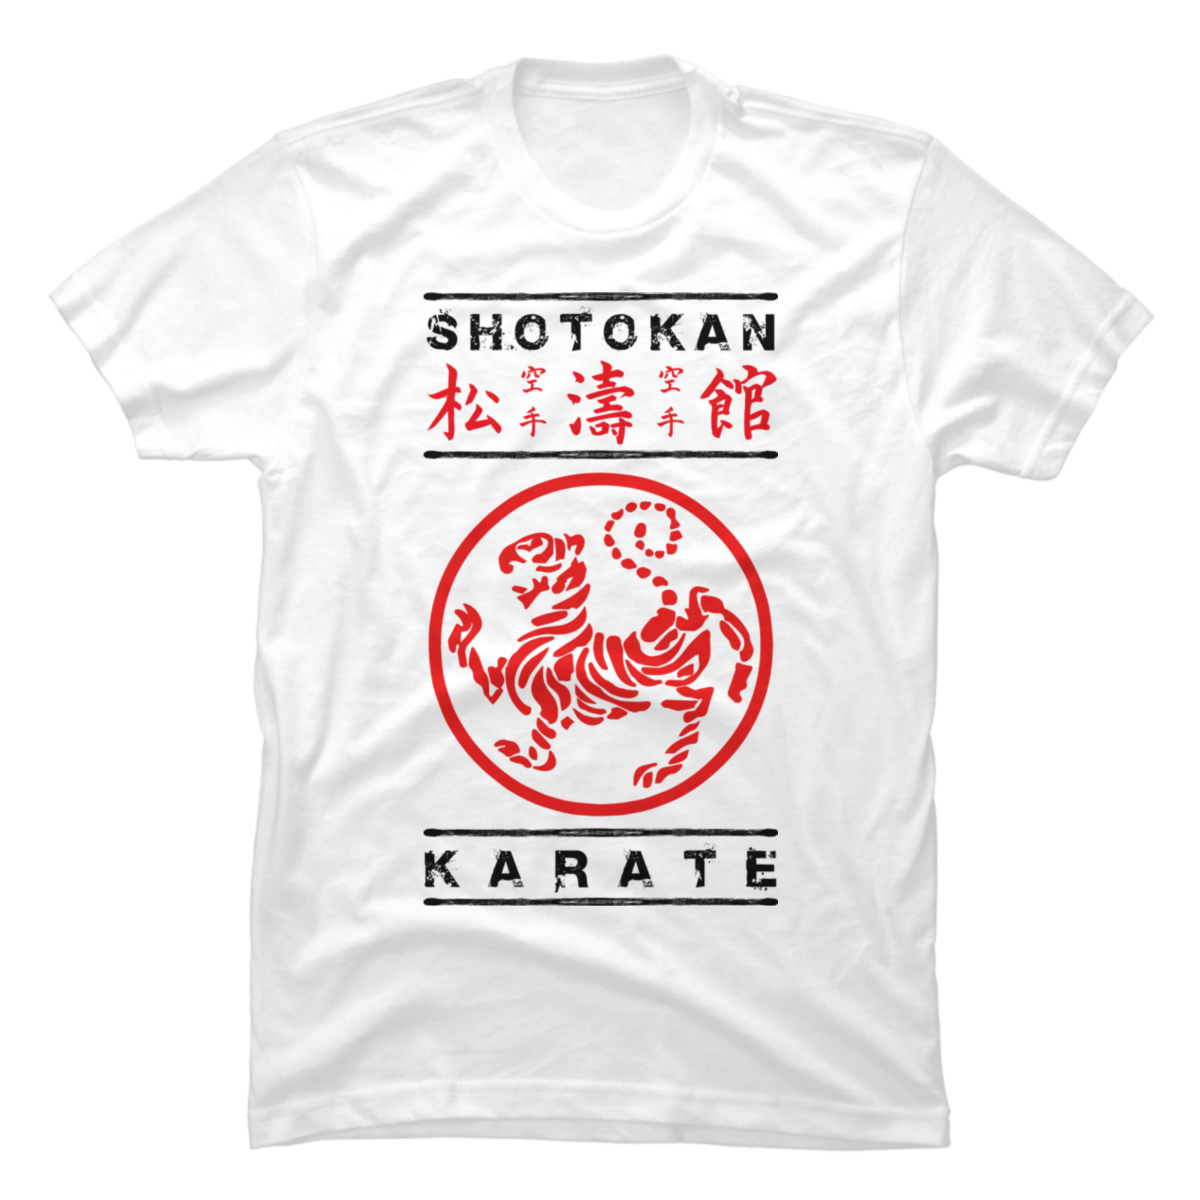 shotokan shirt